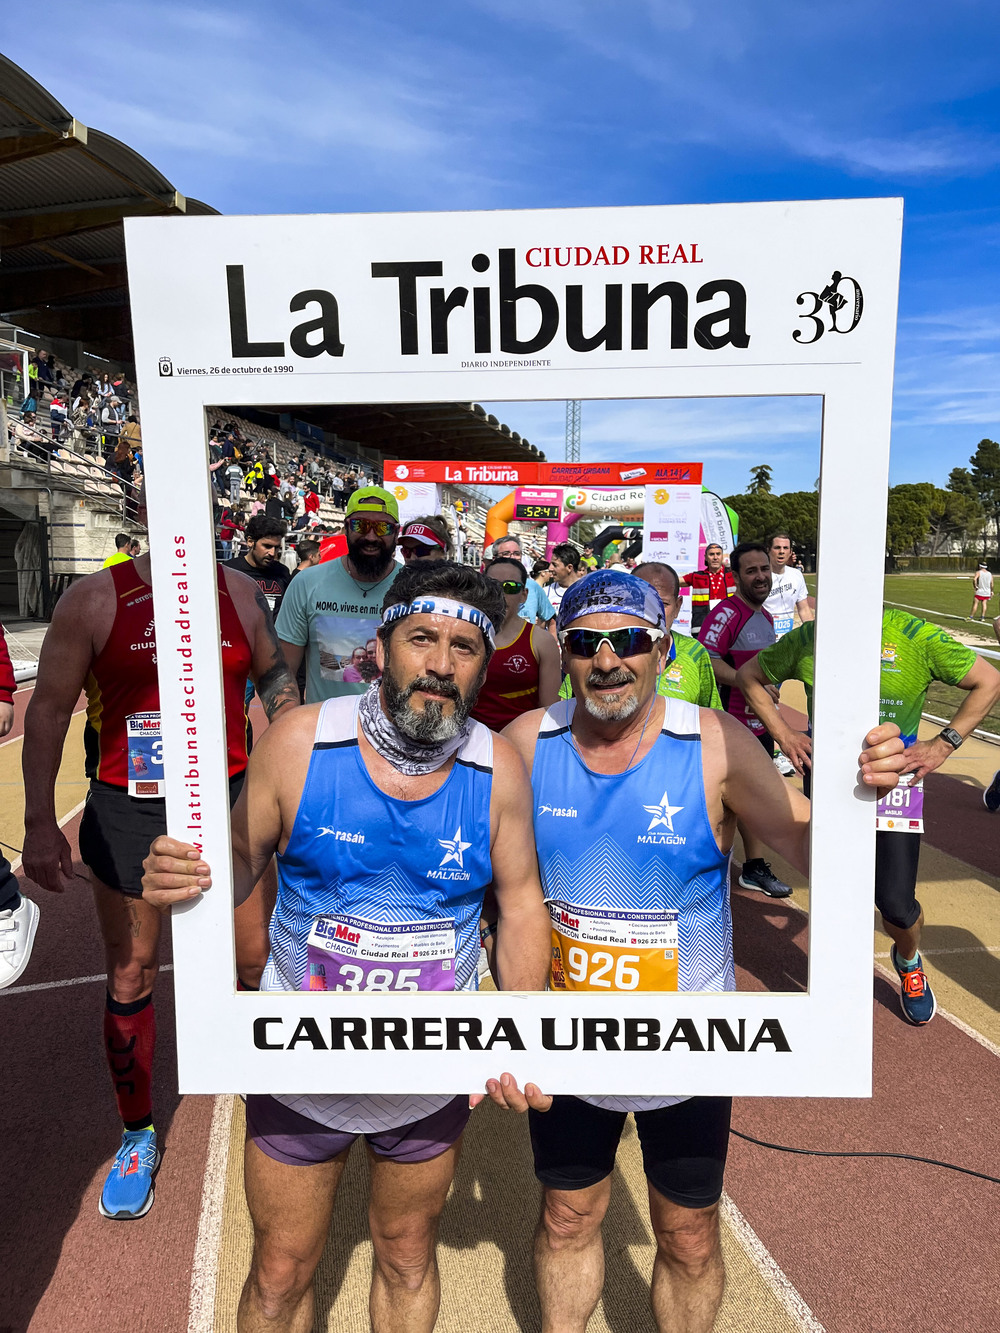 carrera de La Tribuna, carrera de 10 Klm patrocinada por La Tribuna de Ciudad Real, gente coriendo, carrera de la tribuna  / DIEGO MURILLO RUEDA VILLAVERDE